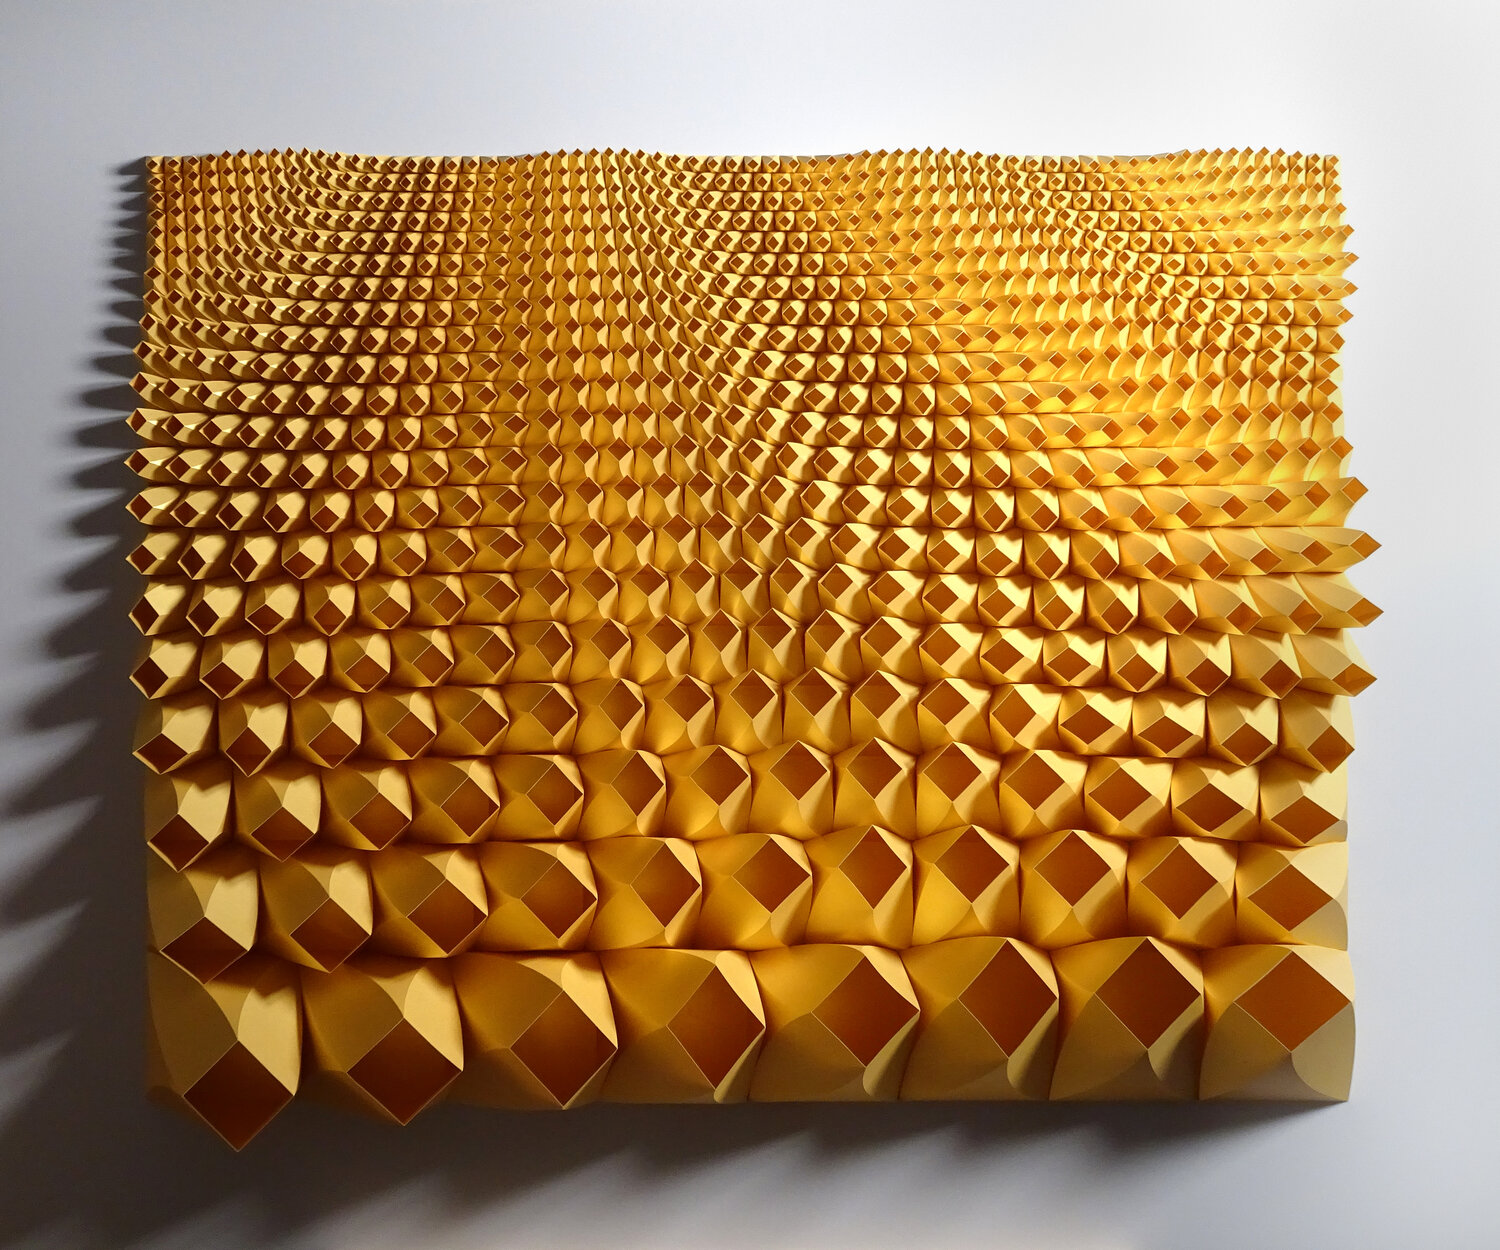 Golden Yellow modular origami by Matt Shlian titled Unholy